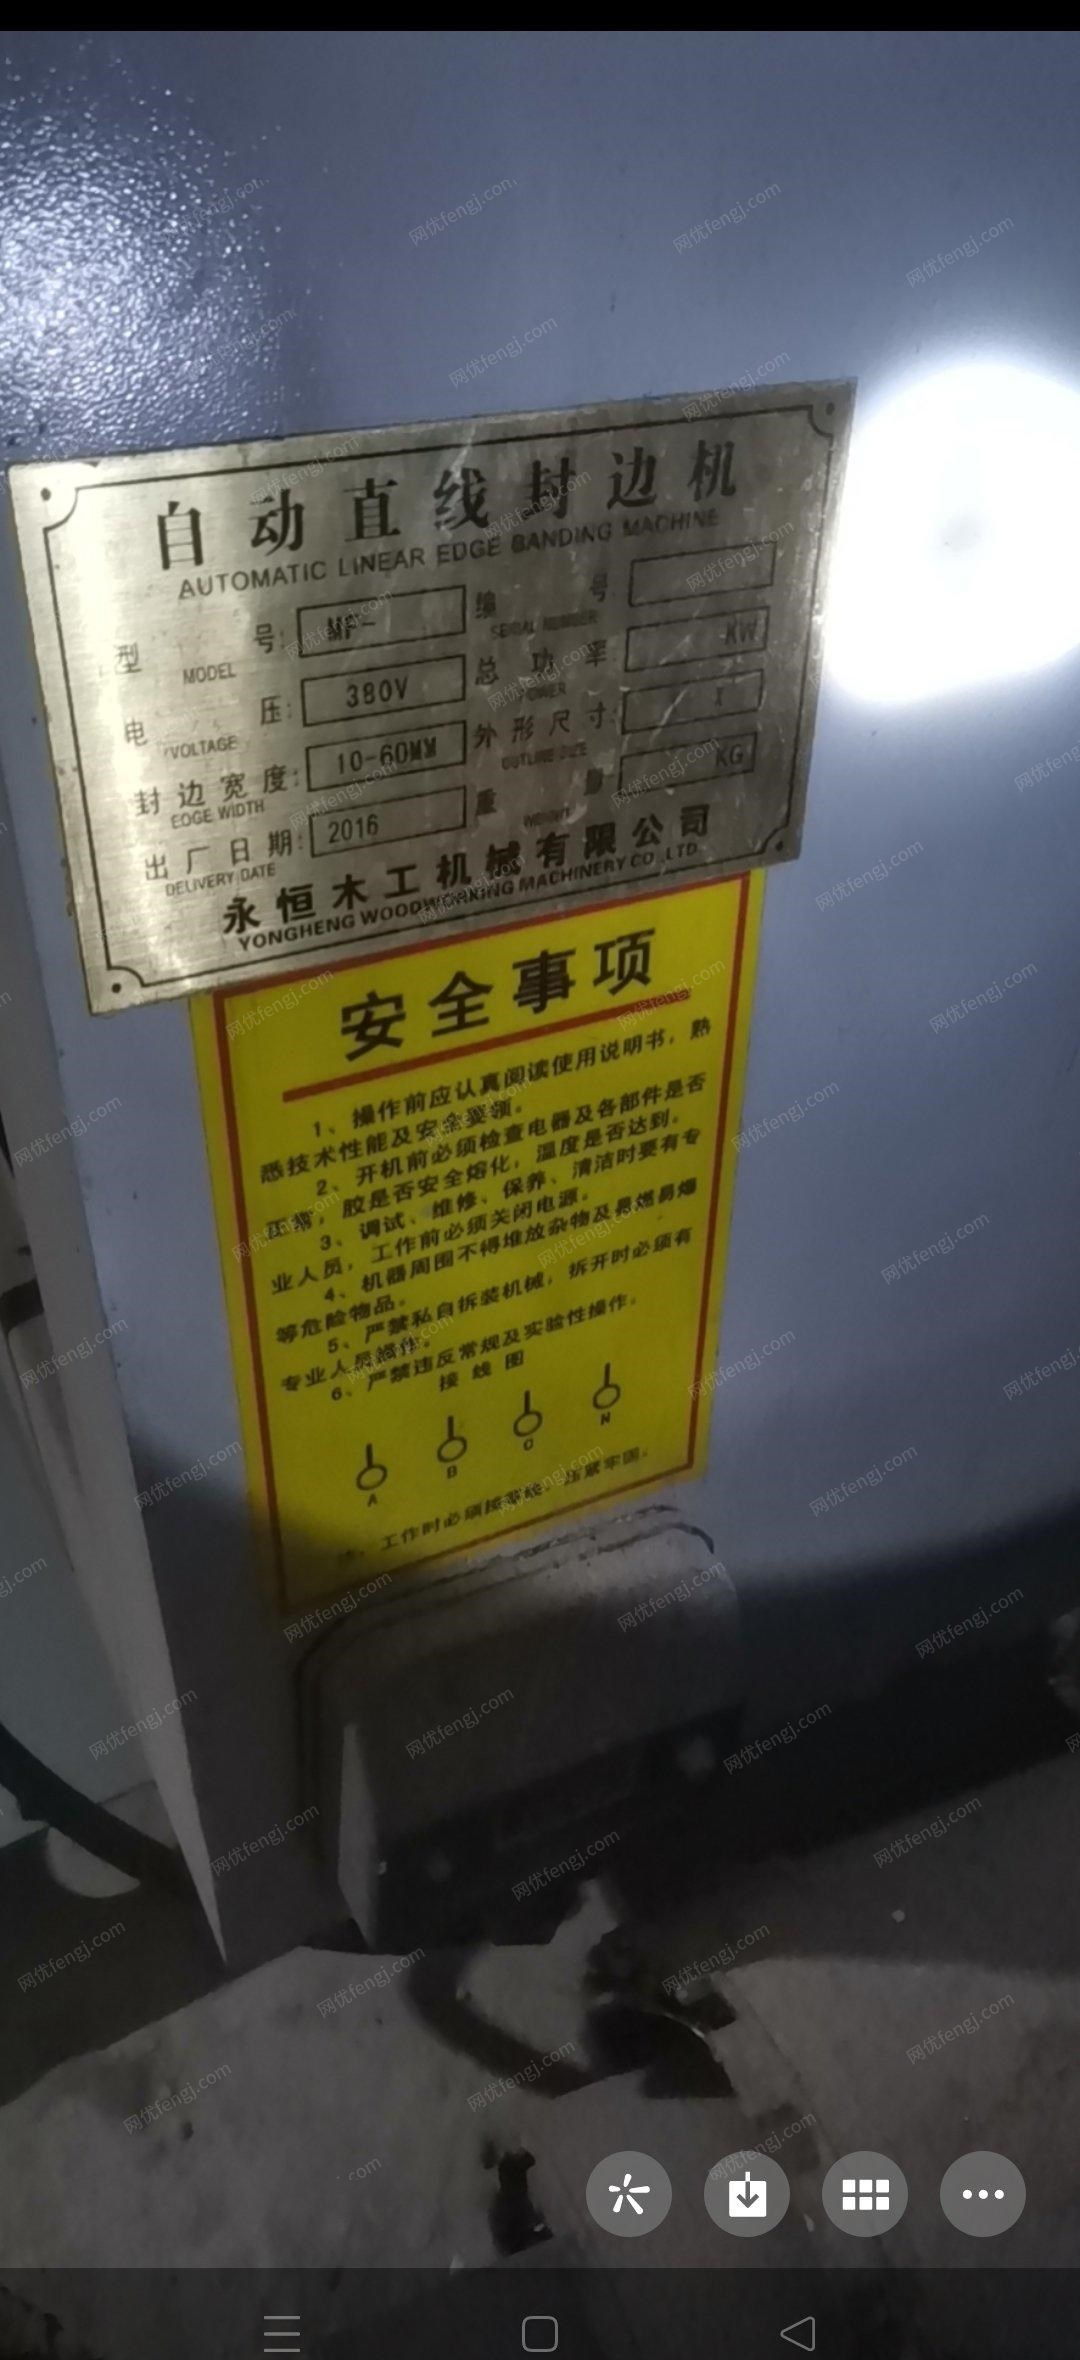 北京房山区更换设备出售闲置1台永恒半自动封边机  2台鼓风机 用了三四年,能正常使用,看货议价.